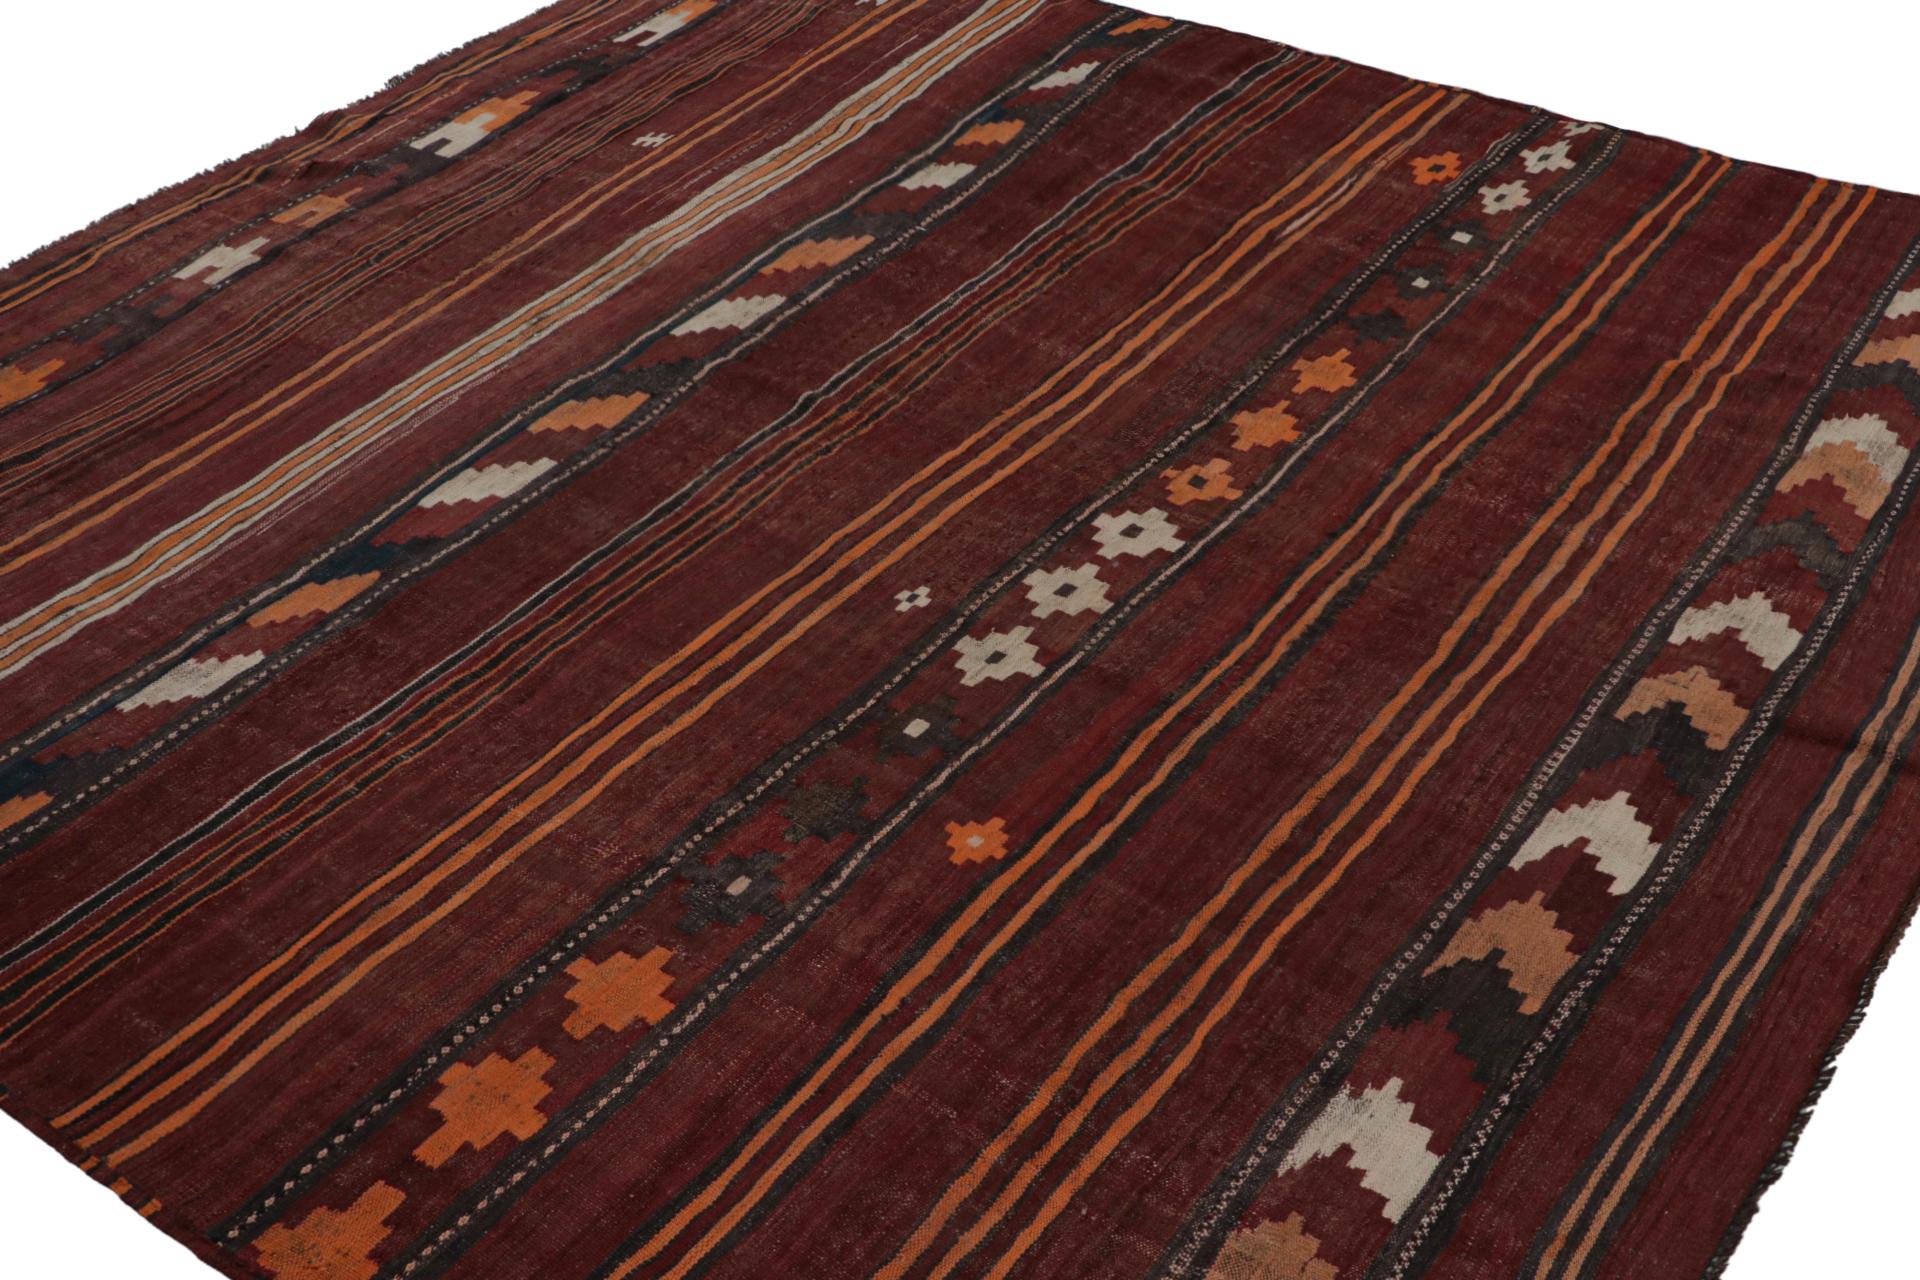 Aus der Vintage-Auswahl von Rug & Kilim: ein 9x10 großer afghanischer Ghalmouri-Kilim-Teppich, der vermutlich aus den Jahren 1970-1980 stammt, aber möglicherweise auch schon Mitte des 20. Handgewebt aus Wolle.

Über das Design:

Dies ist ein